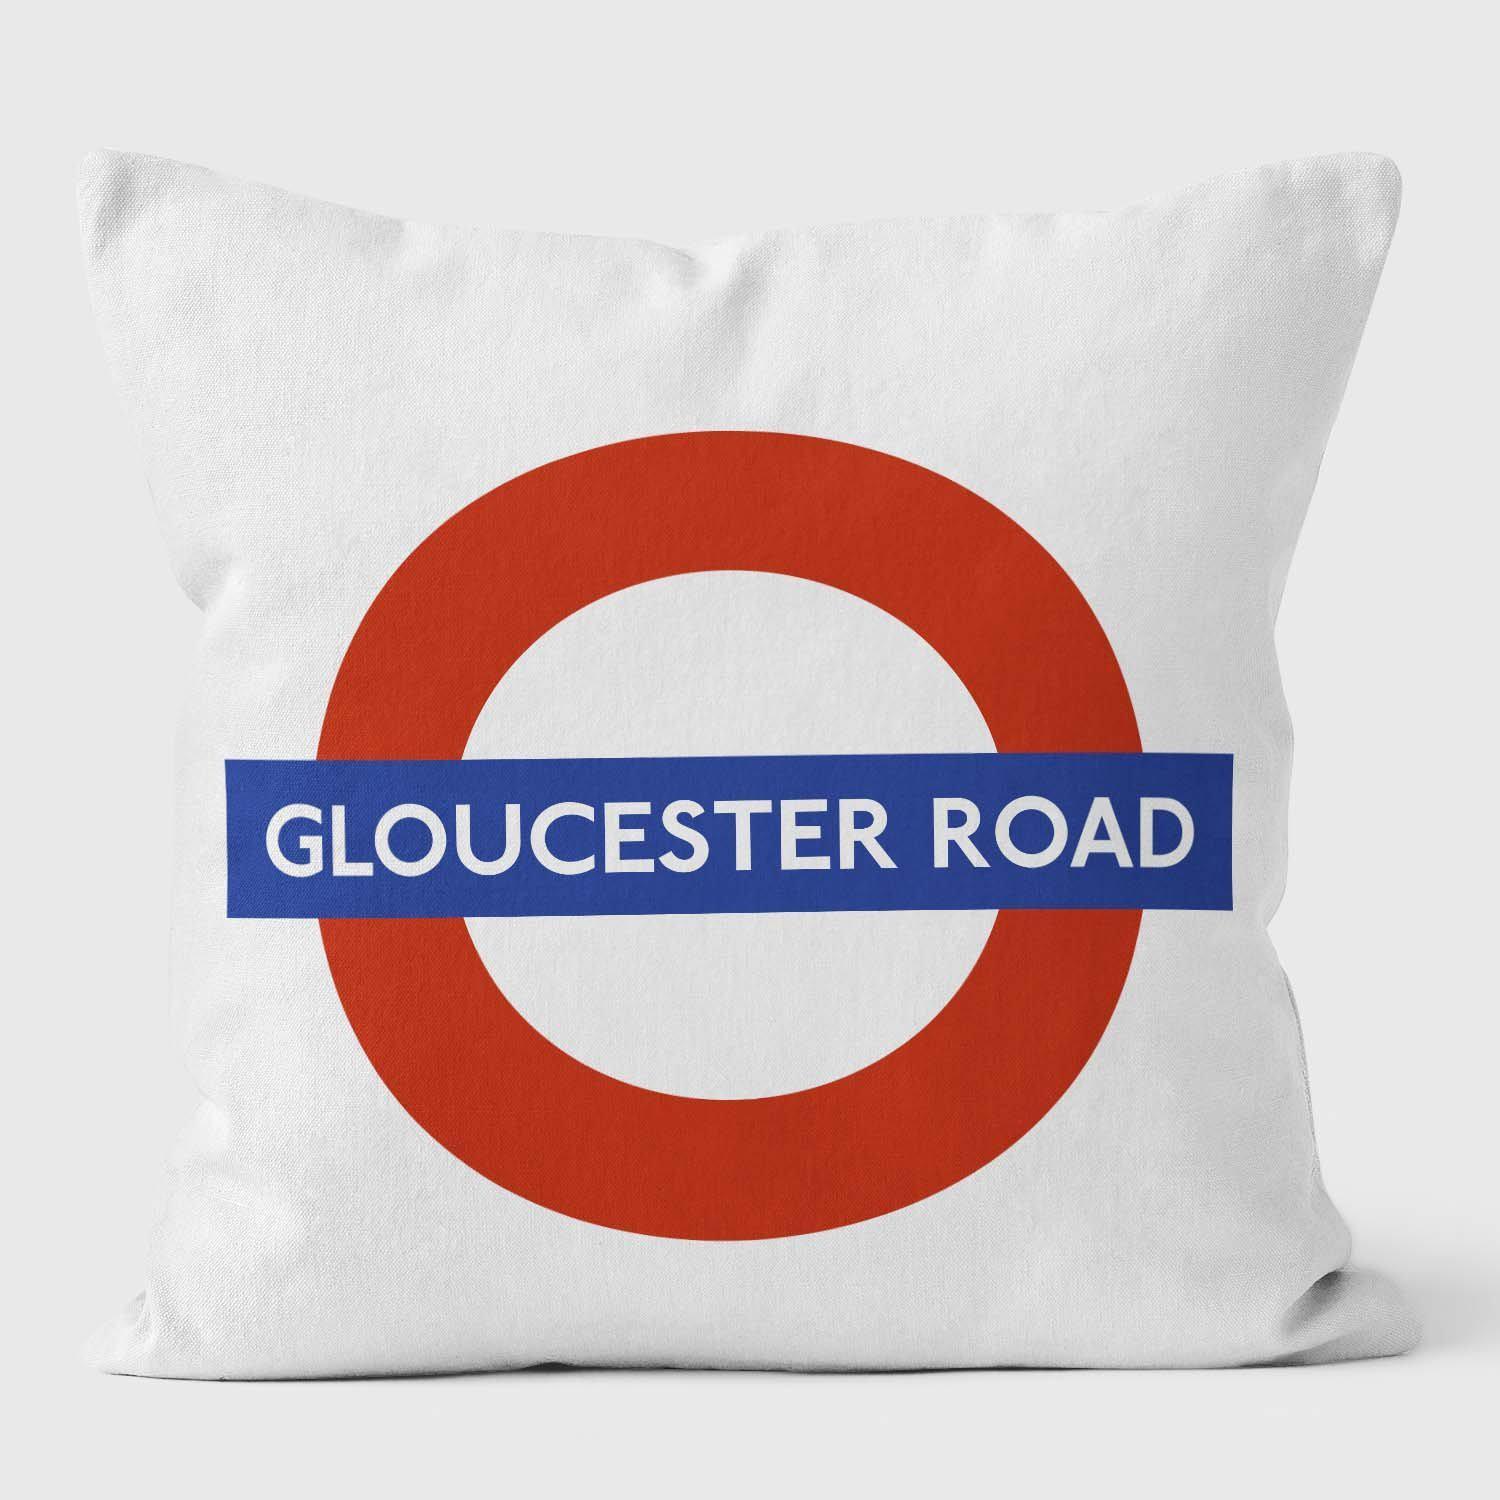 Gloucester Road London Underground Tube Station Roundel Cushion - Handmade Cushions UK - WeLoveCushions